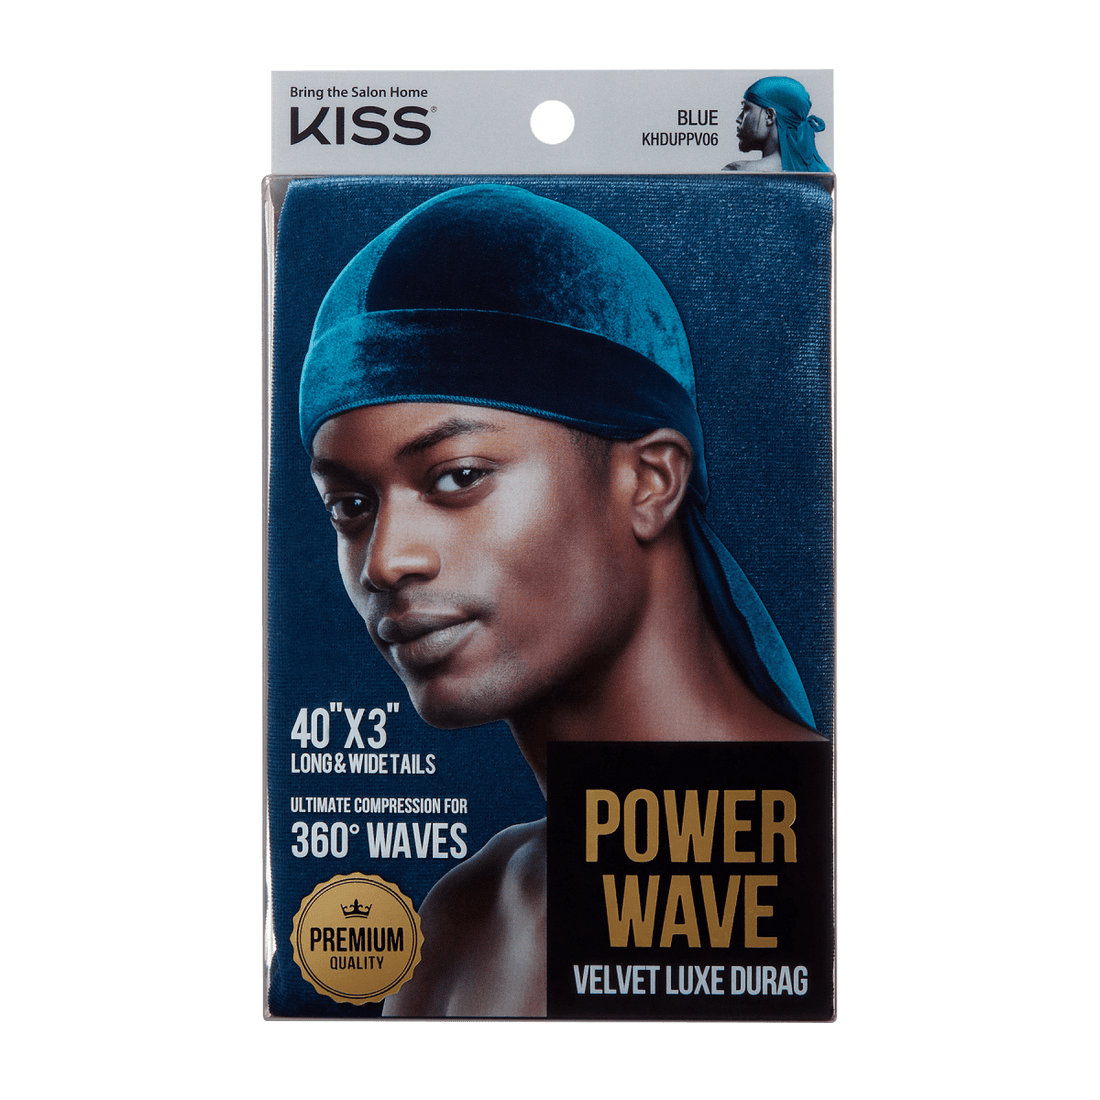 KISS Power Wave Velvet Luxe Durag - BLUE VELVET